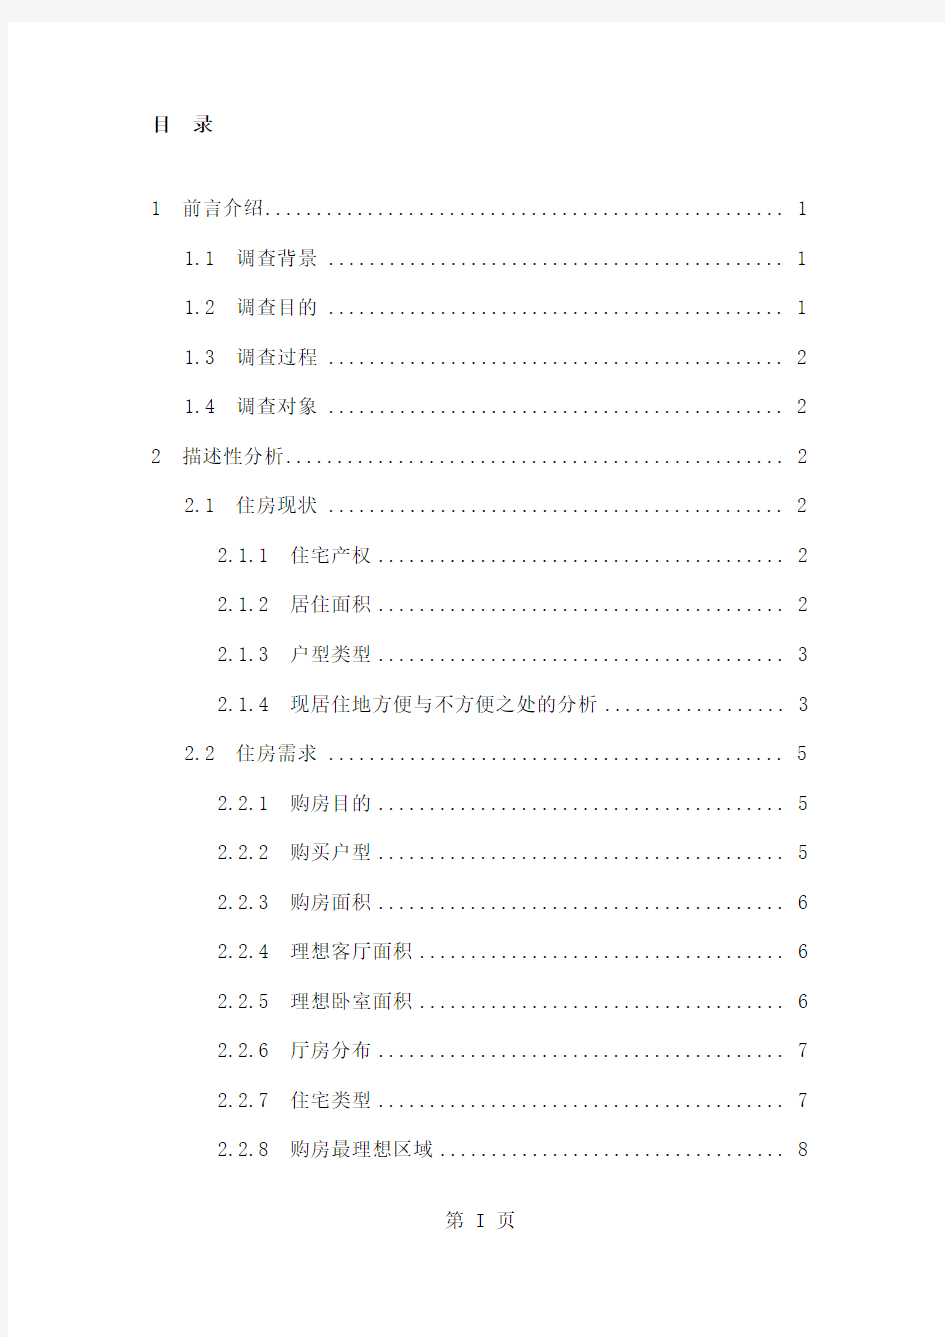 2019年郑州市房地产消费者需求调查报告共29页